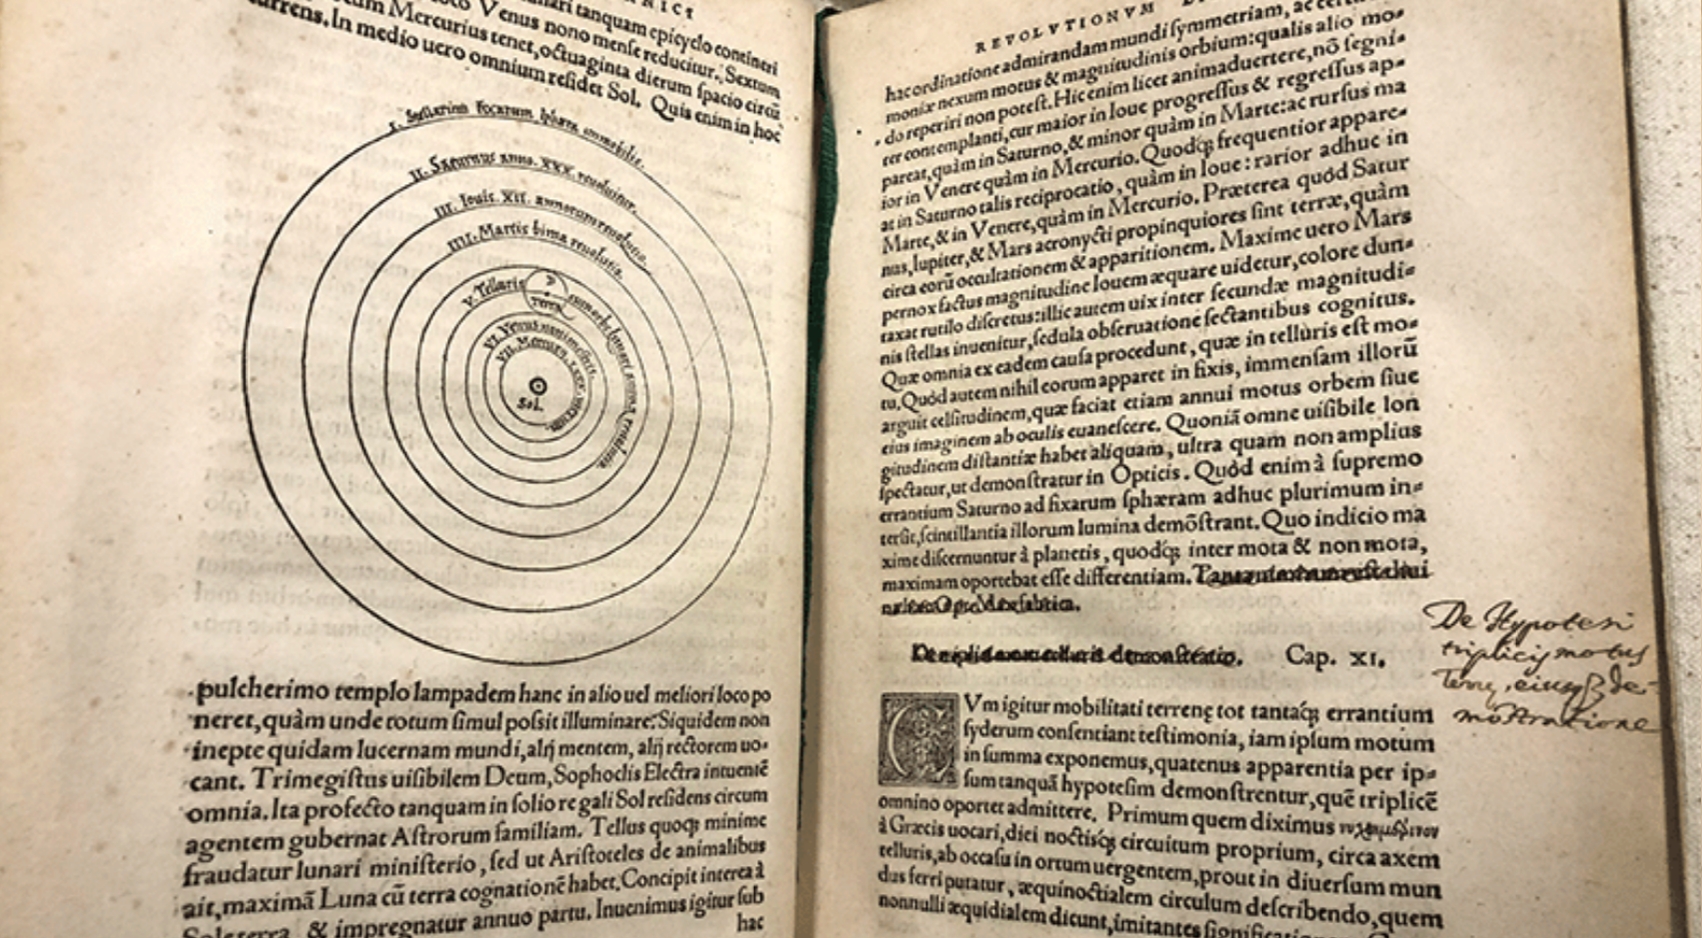 A first edition of Nicolaus Copernicus landmark scientific text, De revolutionibus orbium coelestium will be on display Monday, March 14 for SDSU's quasquicentennial celebration.